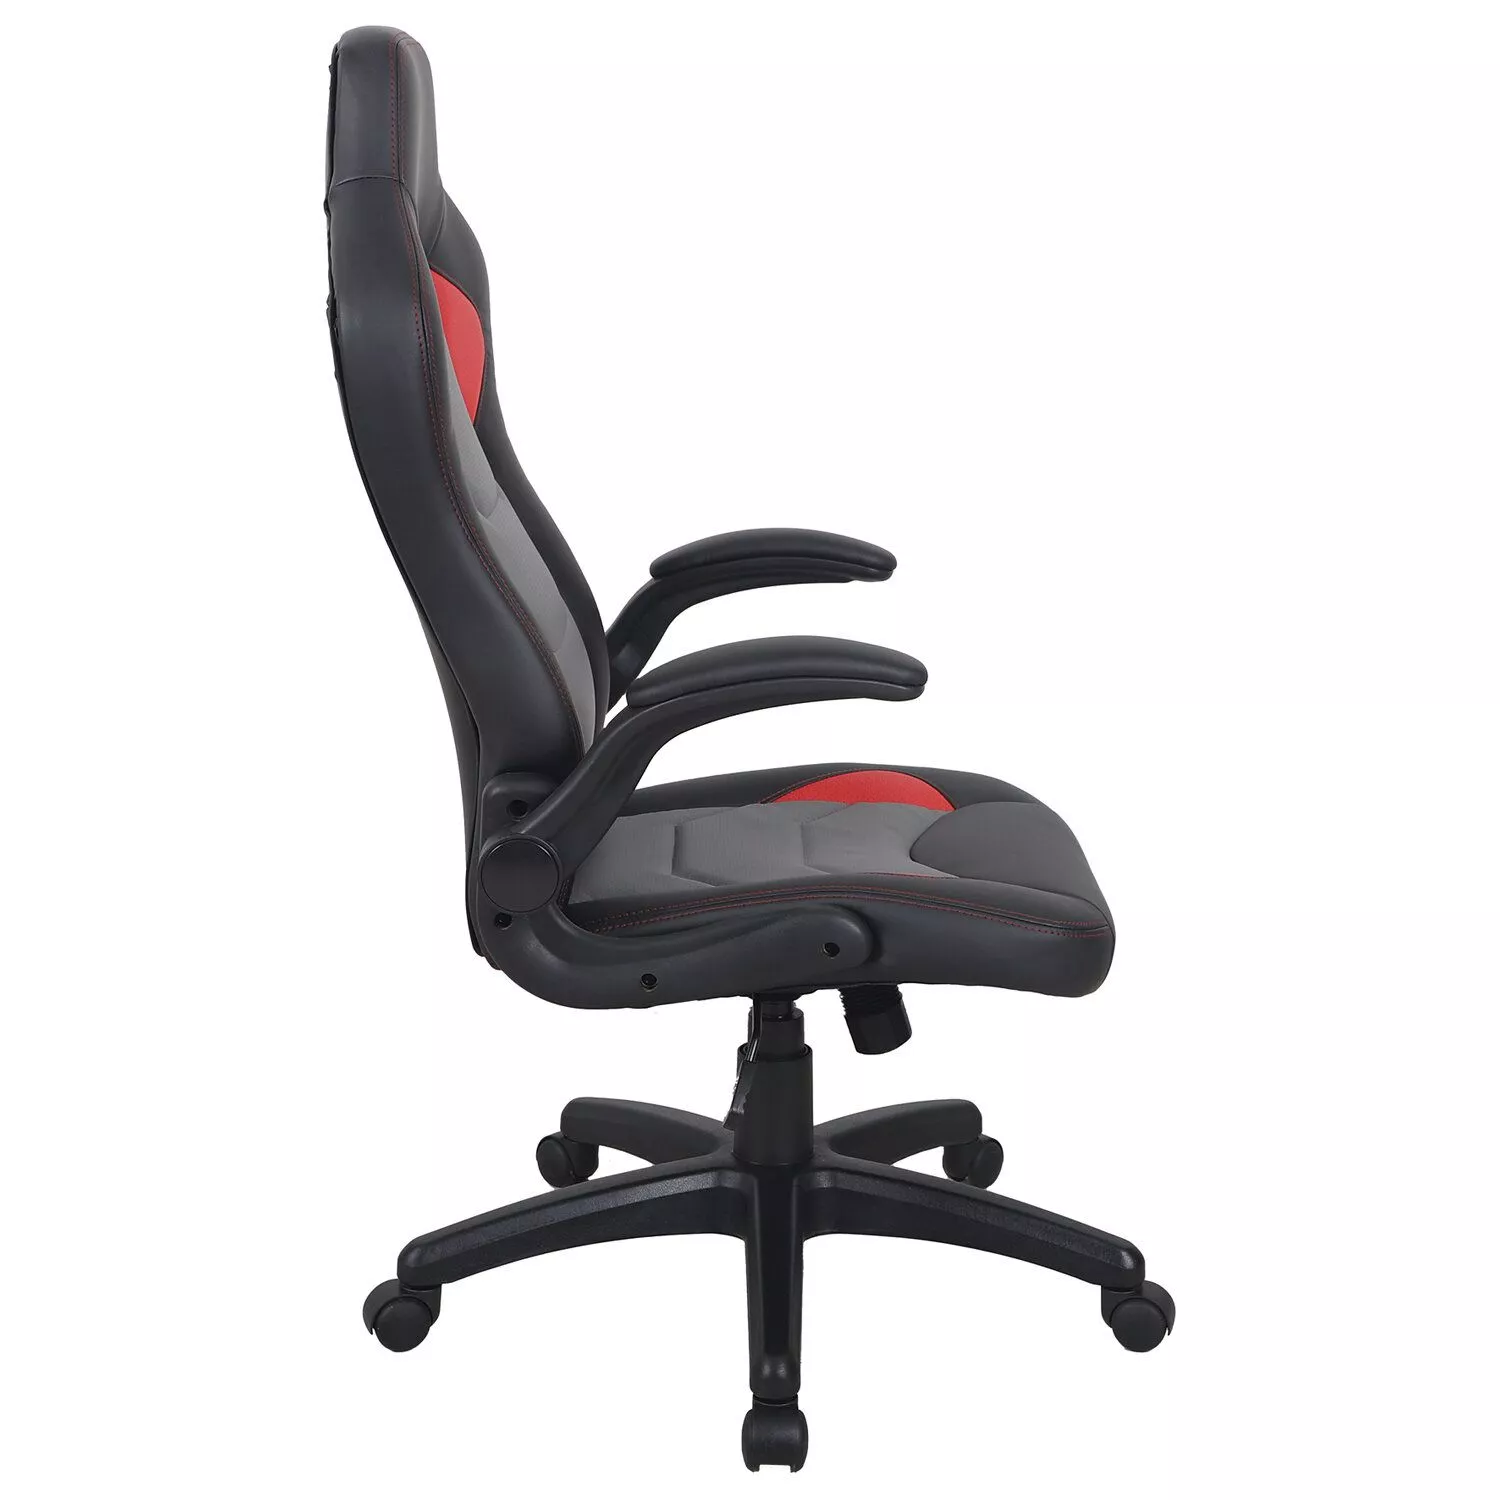 Кресло компьютерное BRABIX Skill GM-005 черный красный 532496